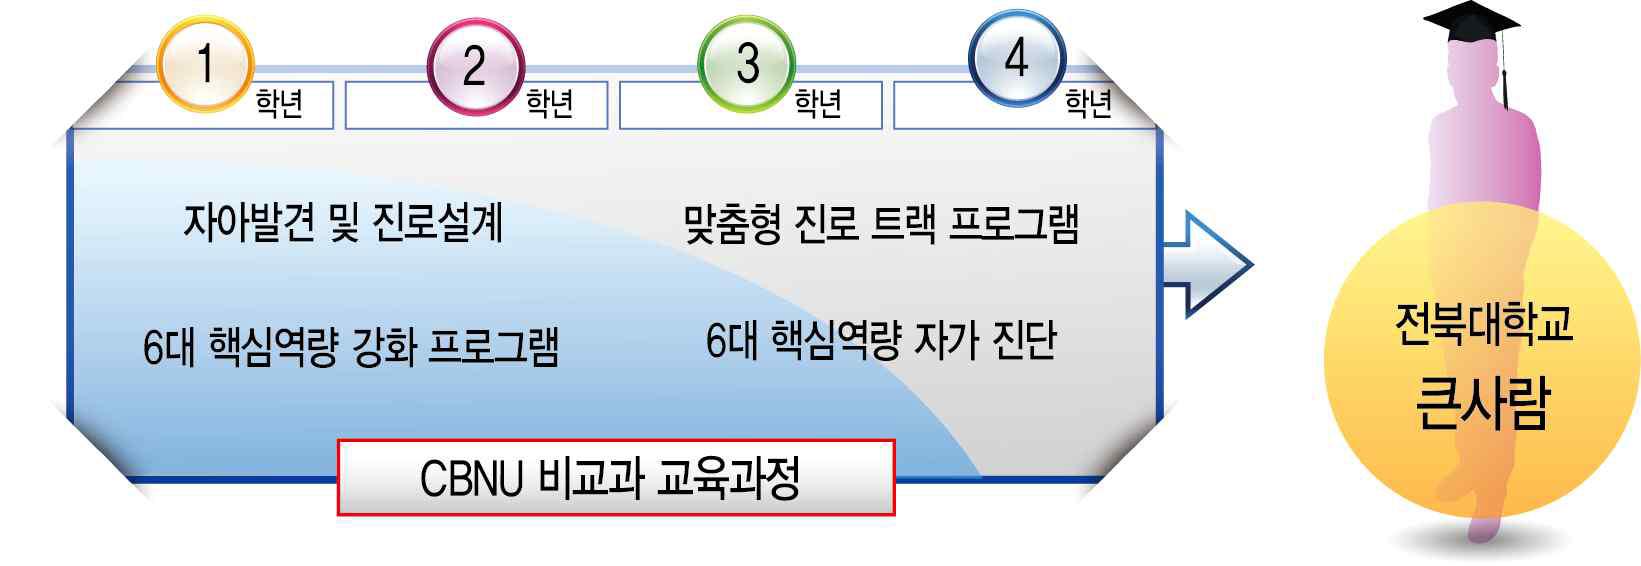 전북대학교 비교과 교육과정 전략